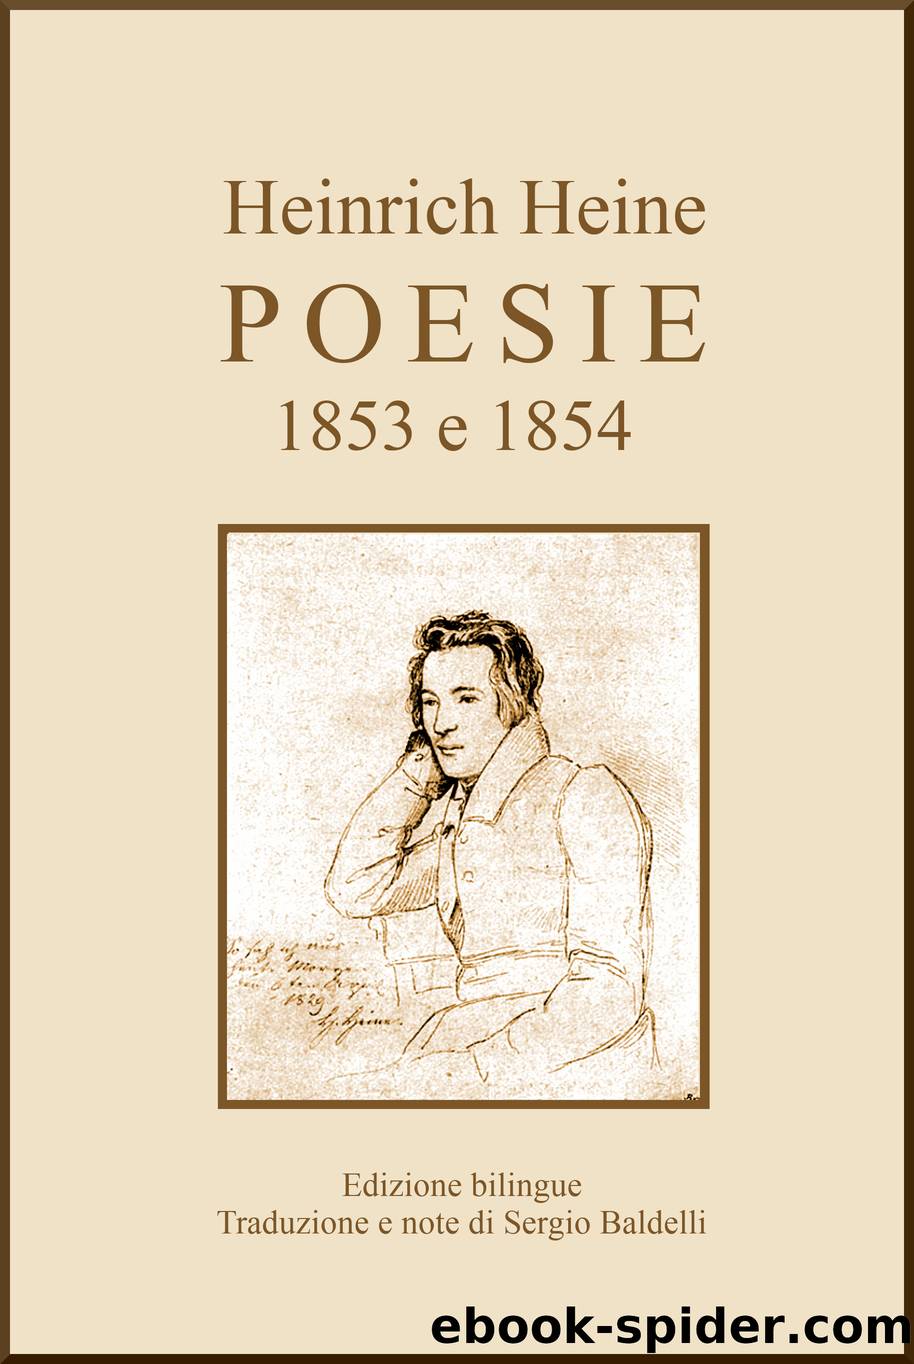 Poesie. 1853 e 1854 by Heinrich Heine